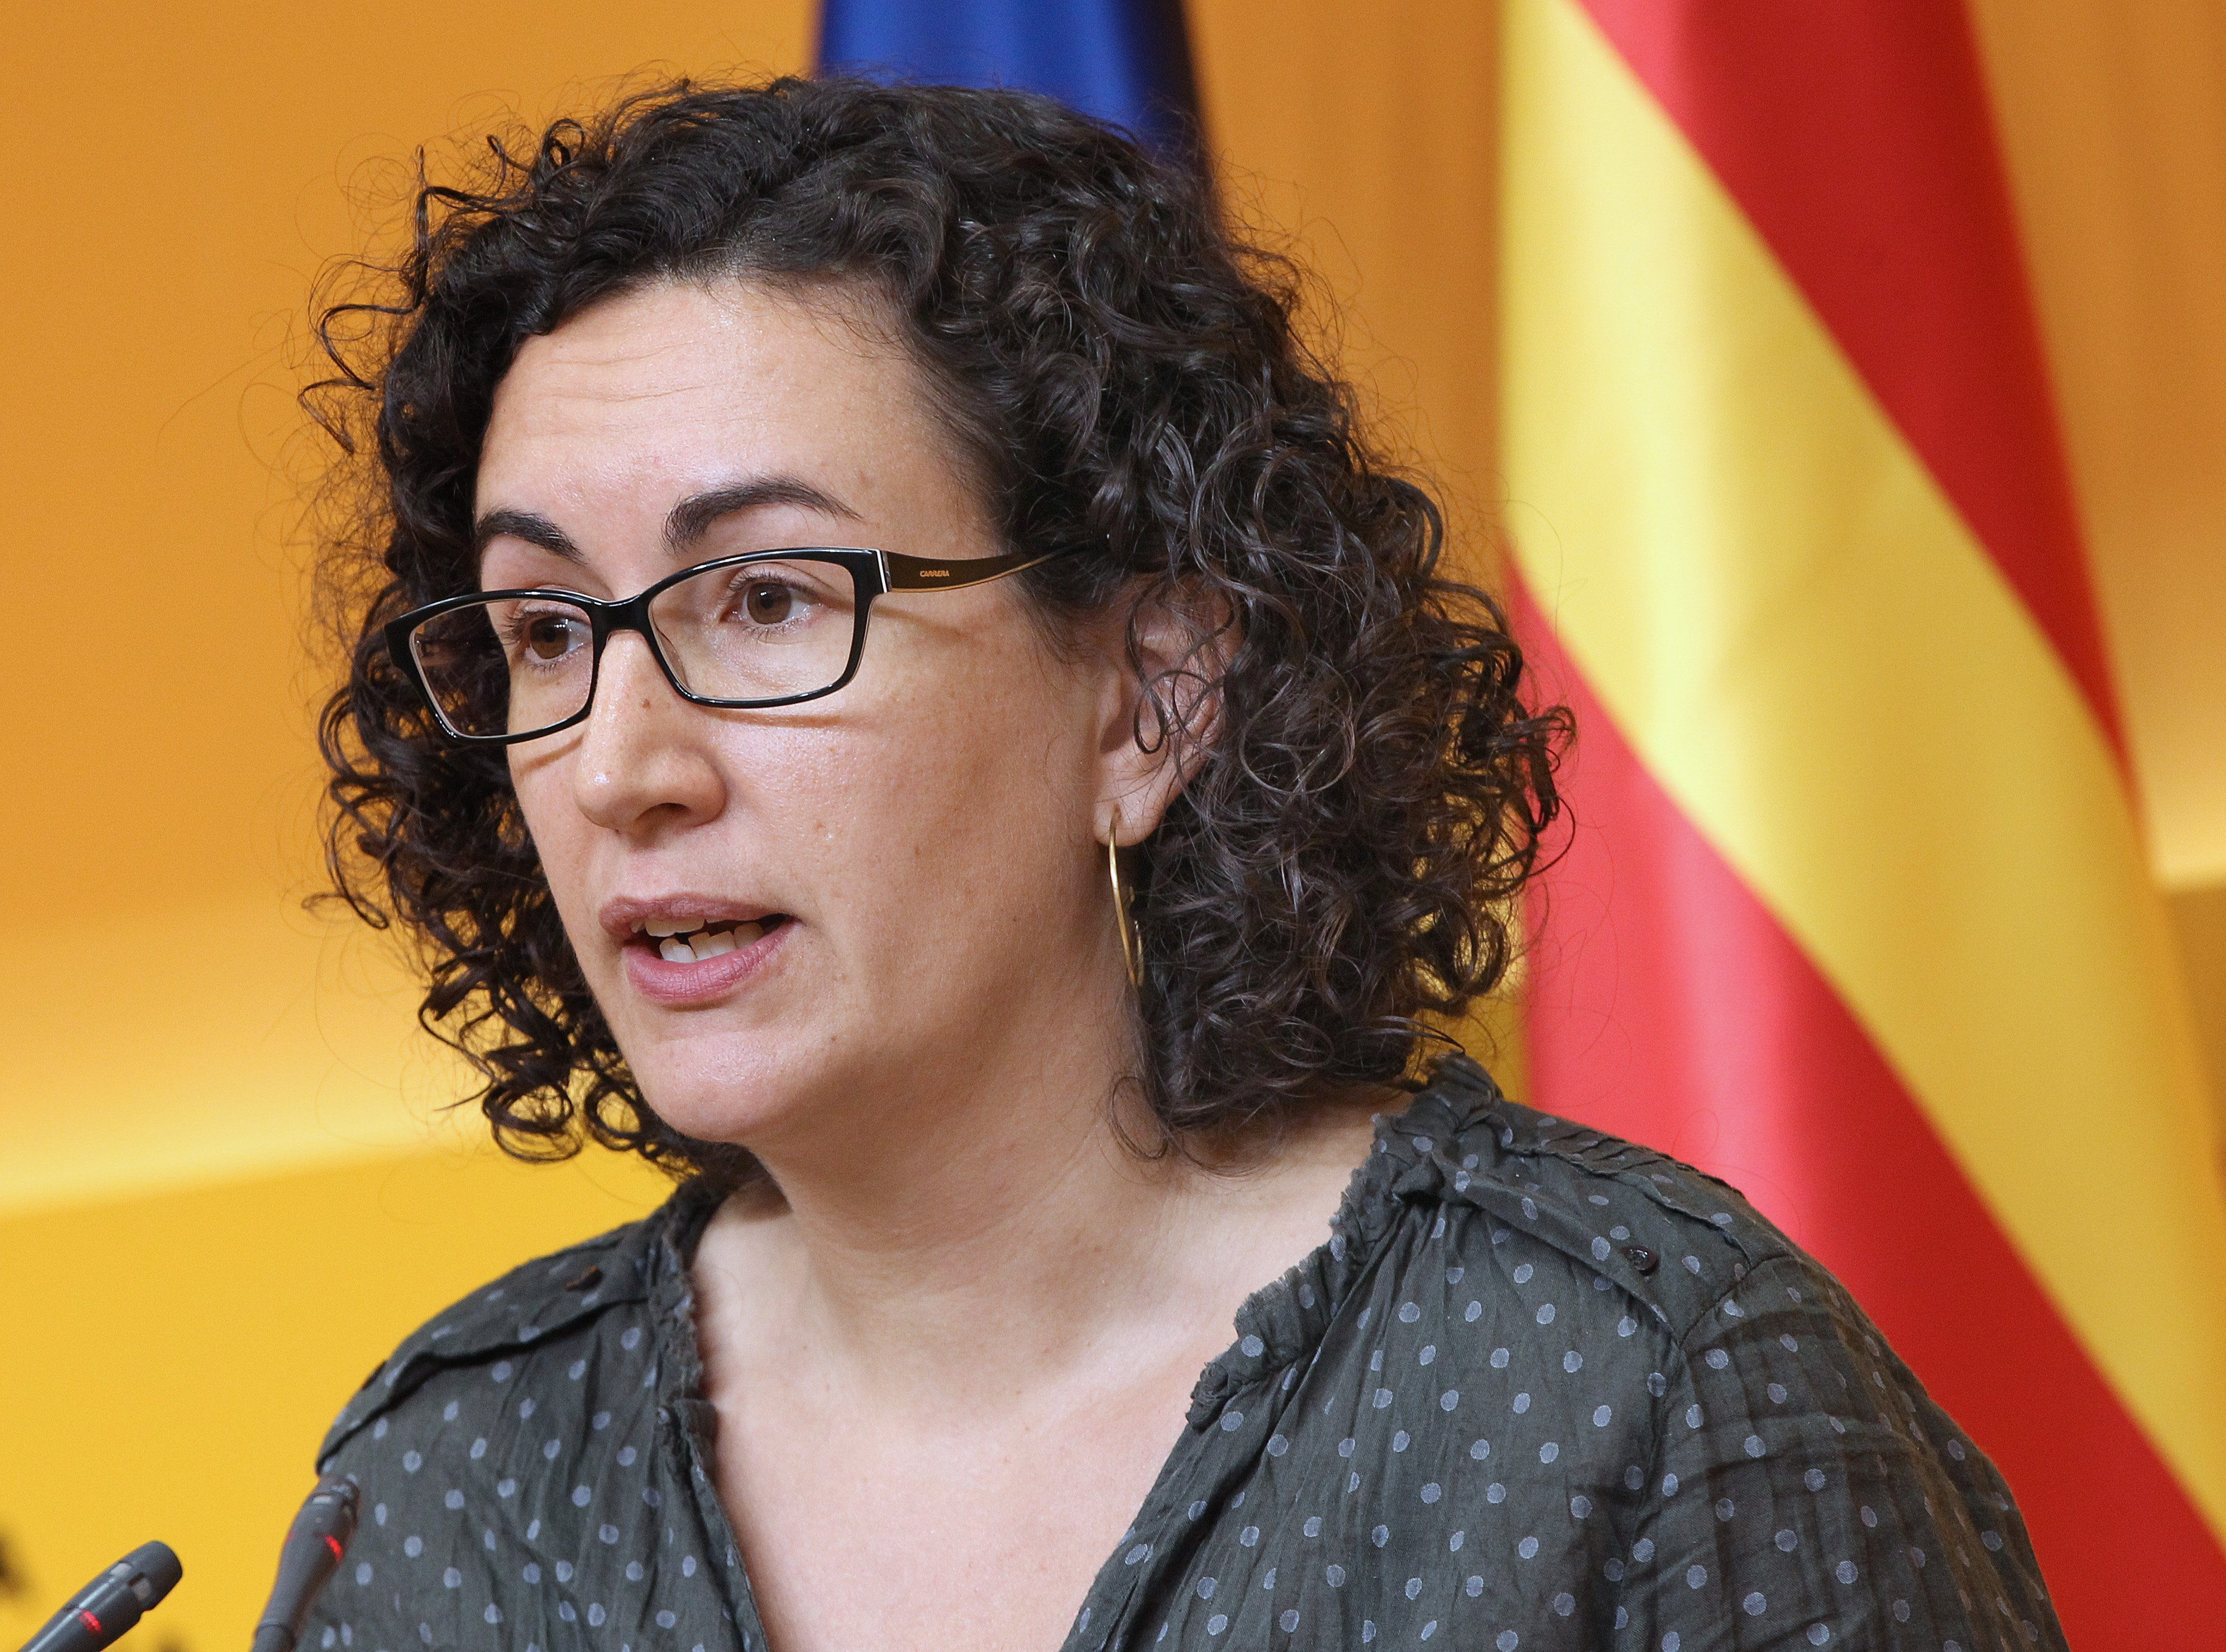 La justicia española solicitó la aprehensión de Marta Rovira tras no haber asistido a la cita que tenía pautada ante el juzgado español.